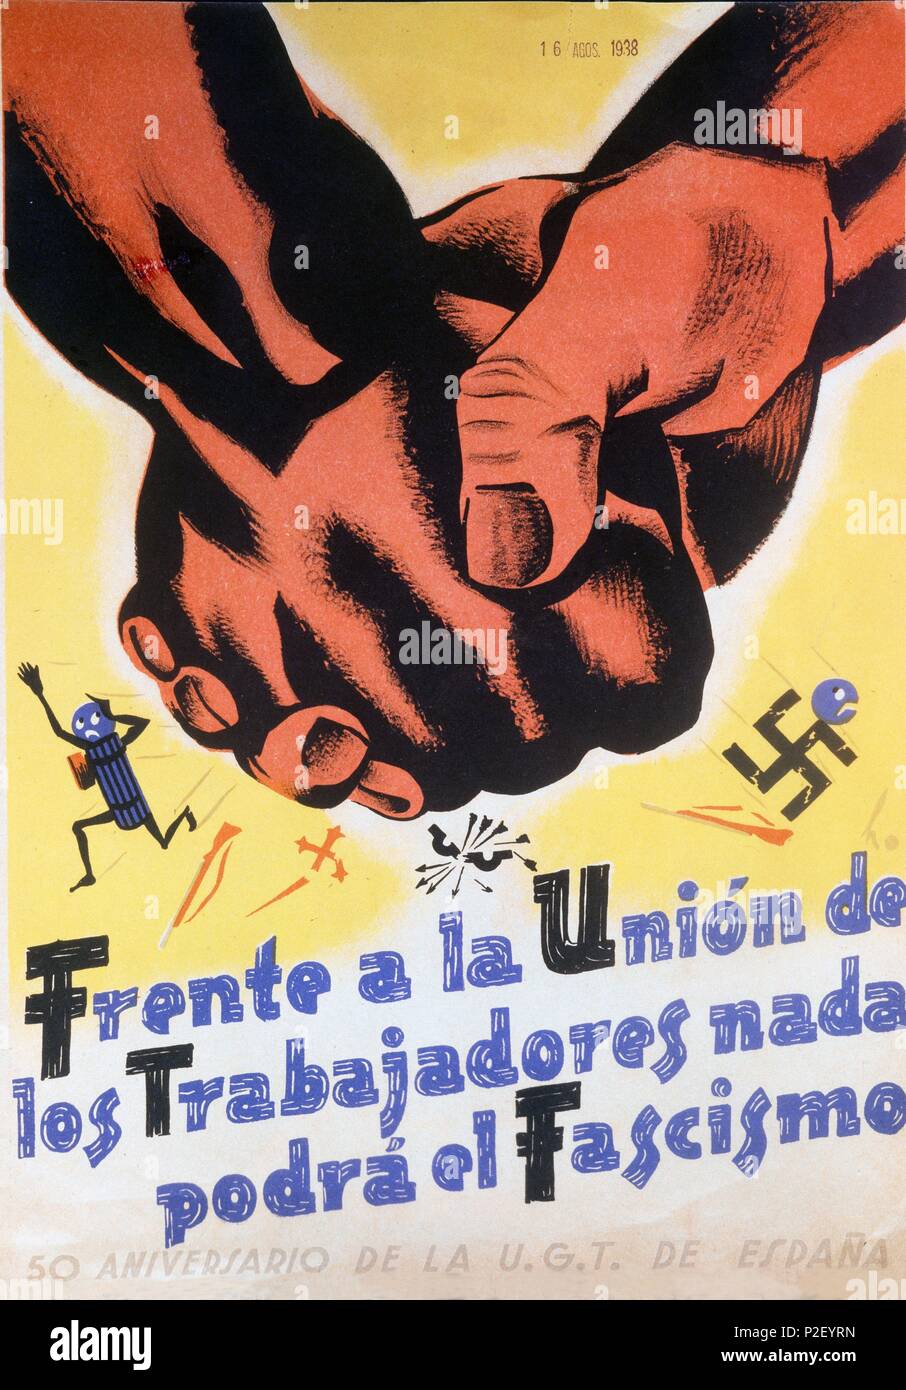 Cartel publicitario con motivo del 50 Aniversario de la U.G.T. de España. Agosto de 1938. Cataluña. Guerra civil 1936-1939. Stock Photo